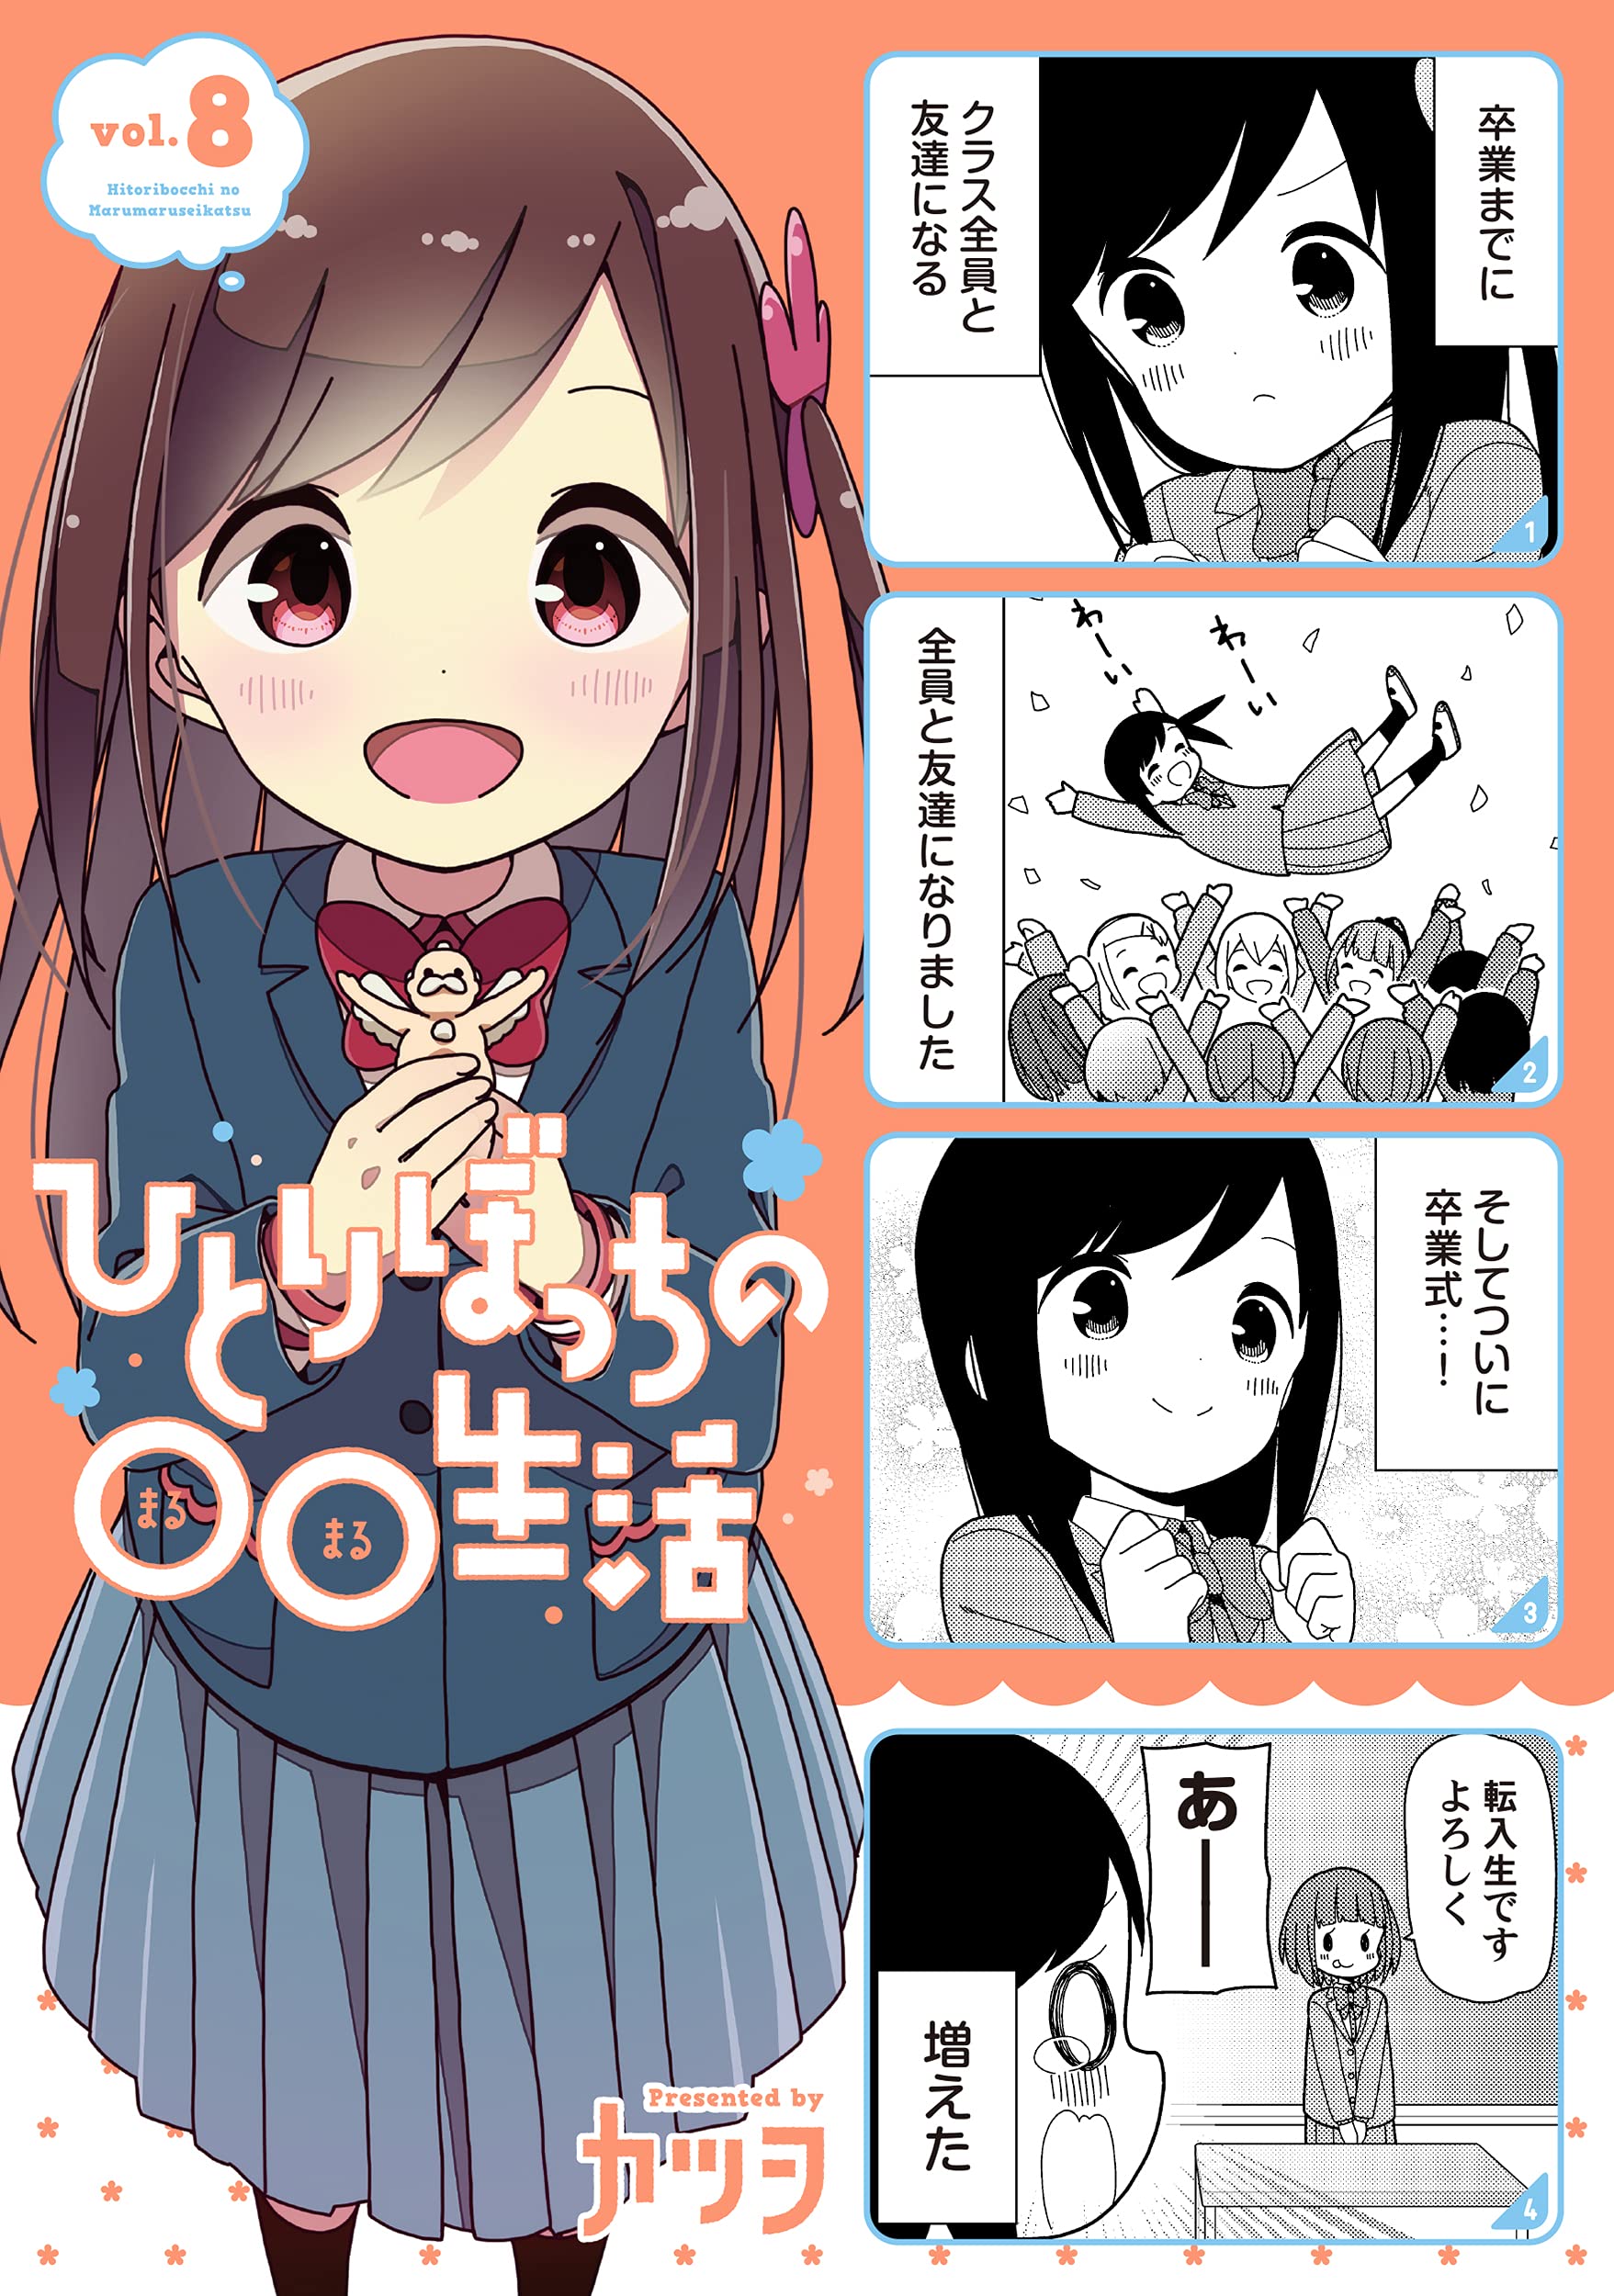 El manga Hitoribocchi no Marumaru Seikatsu ha finalizado — Kudasai